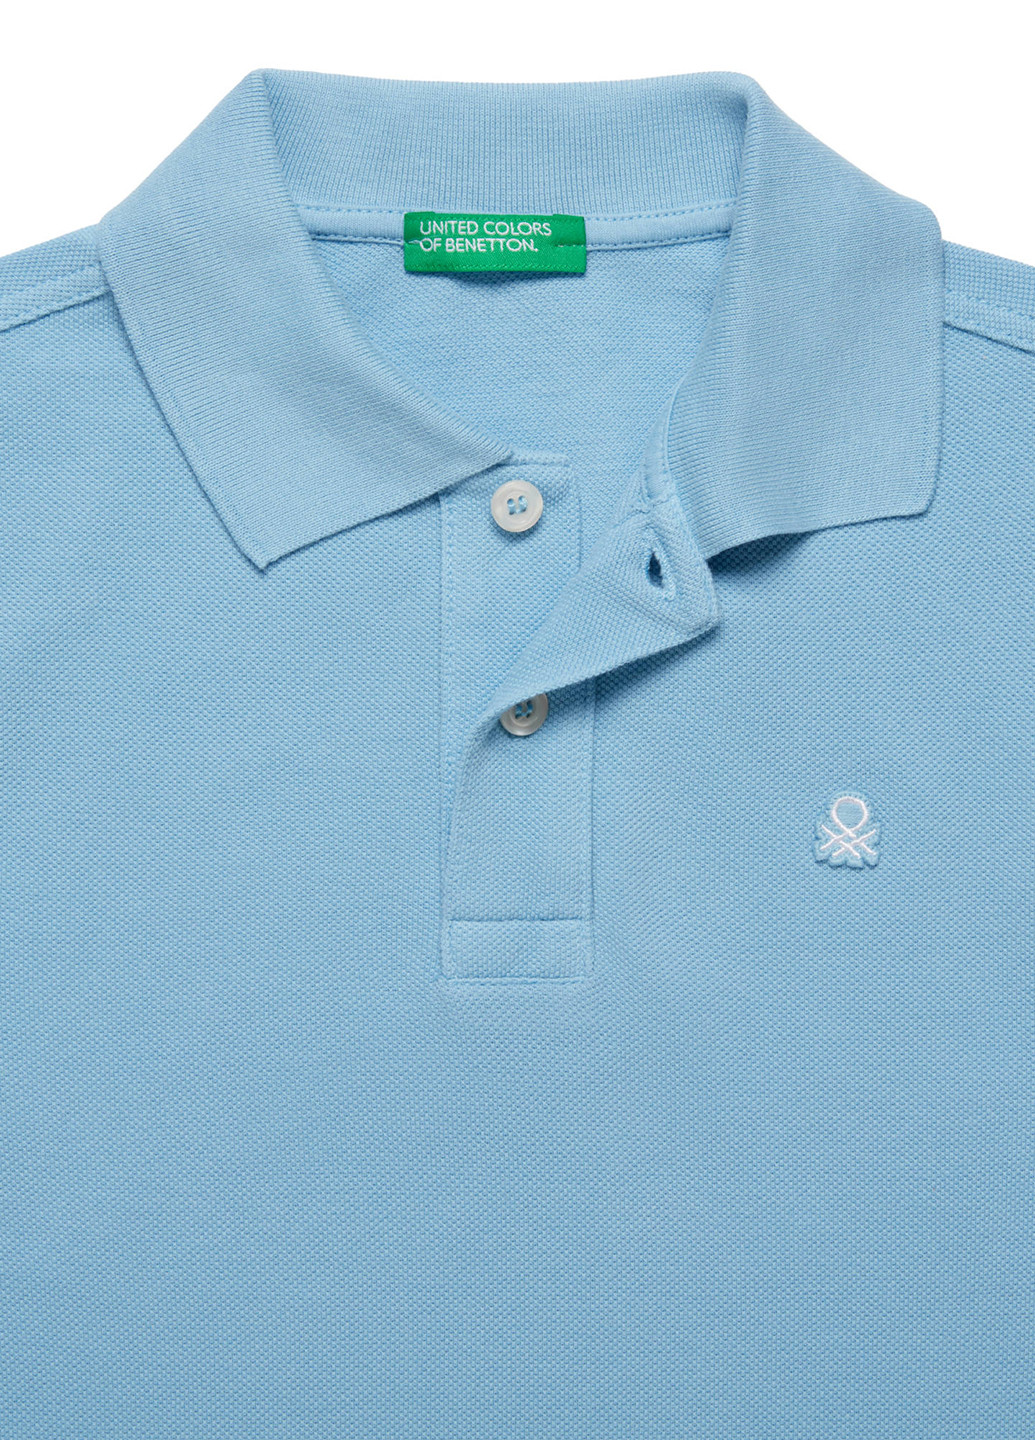 Голубой детская футболка-поло для мальчика United Colors of Benetton однотонная